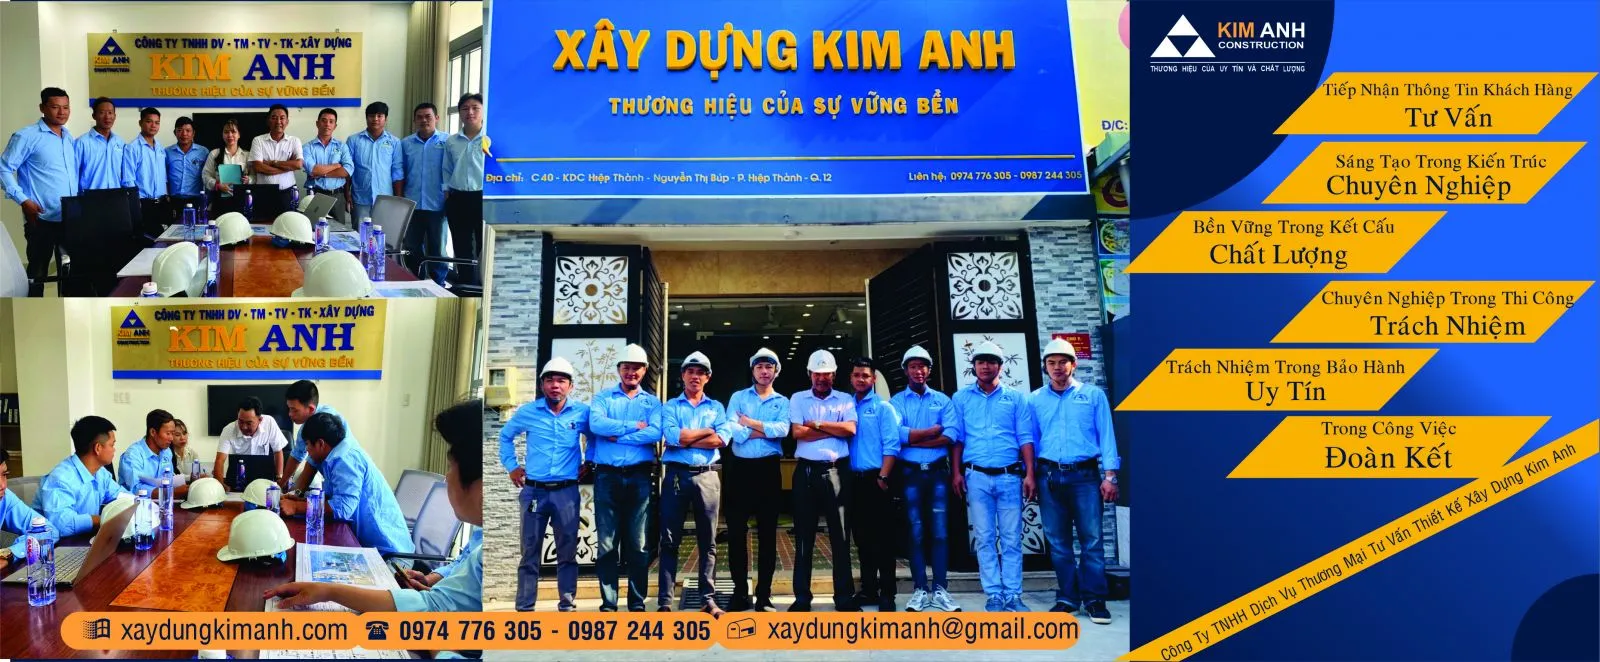 Xây Dựng Kim Anh: Công ty xây dựng nhà Quận Tân Phú